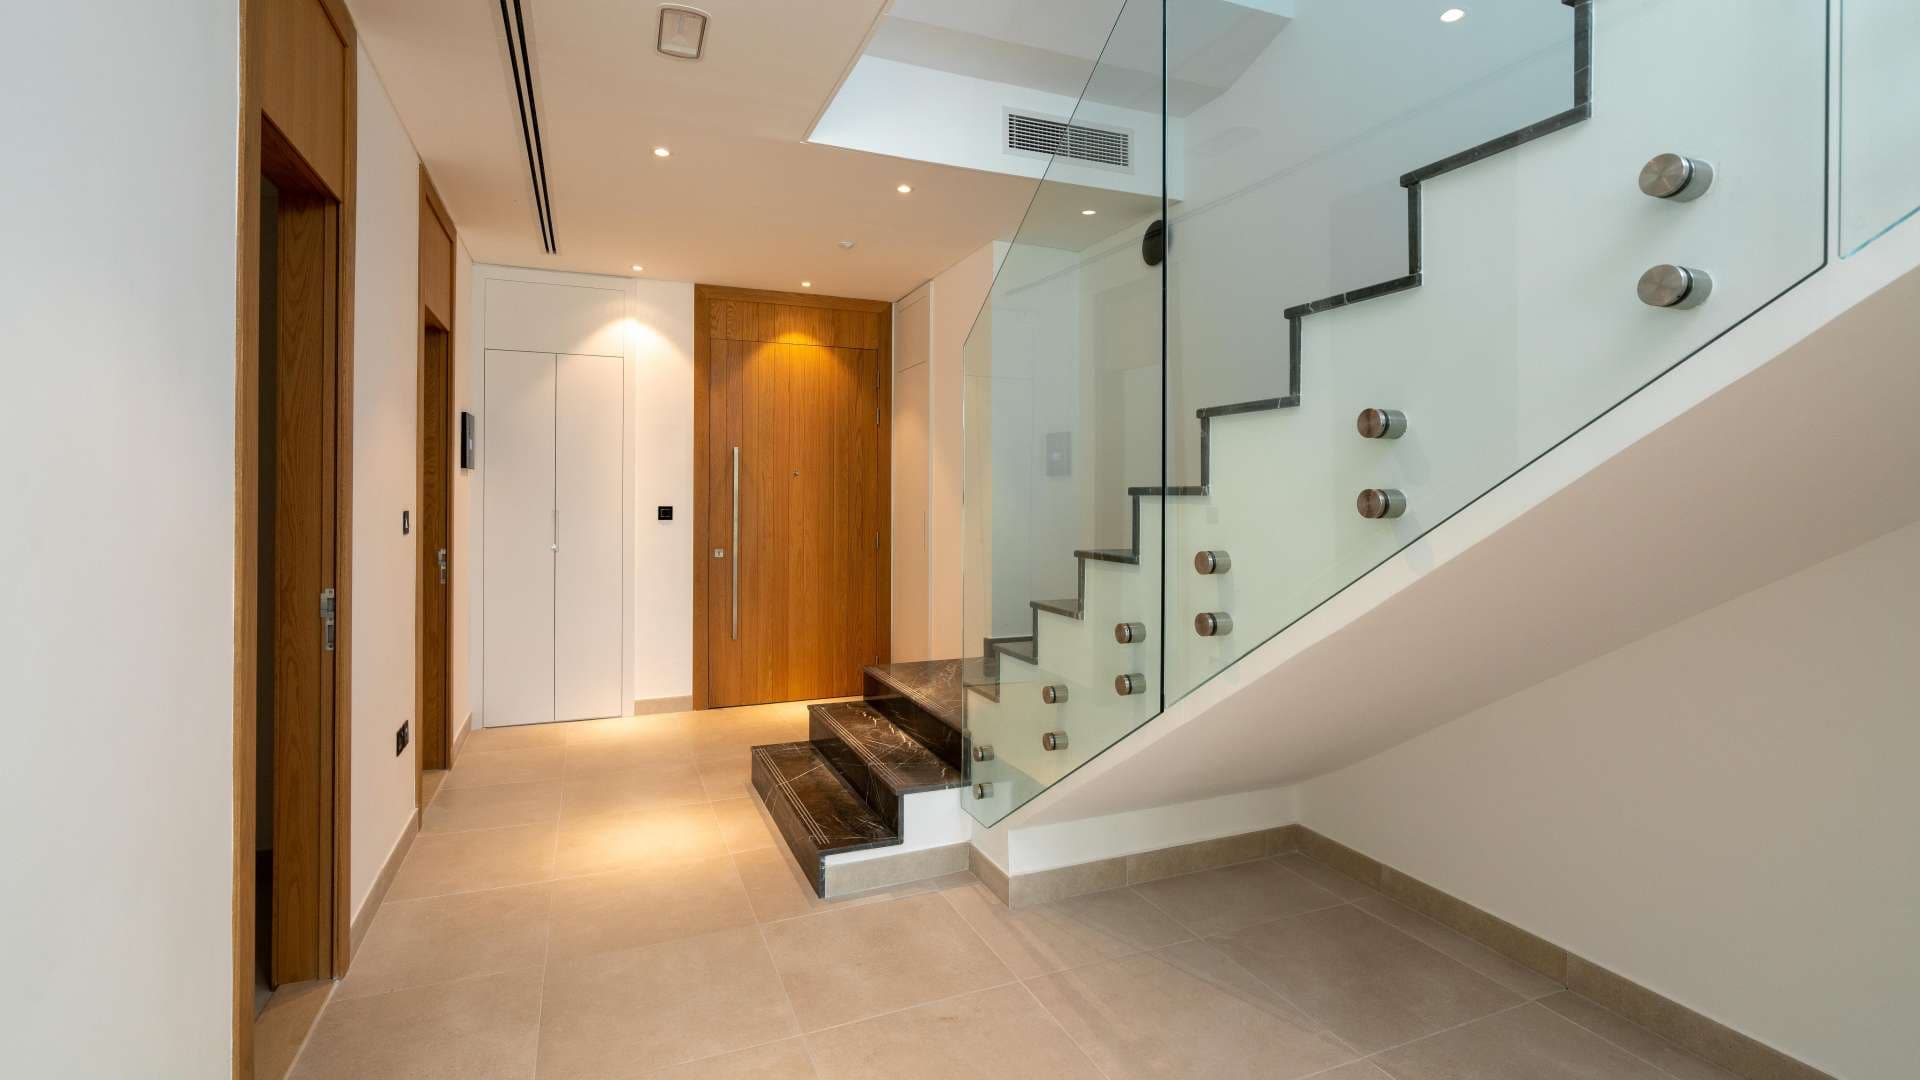 4 Bedroom Villa For Rent Jumeirah Luxury Lp06416 B99e65374af7000.jpg